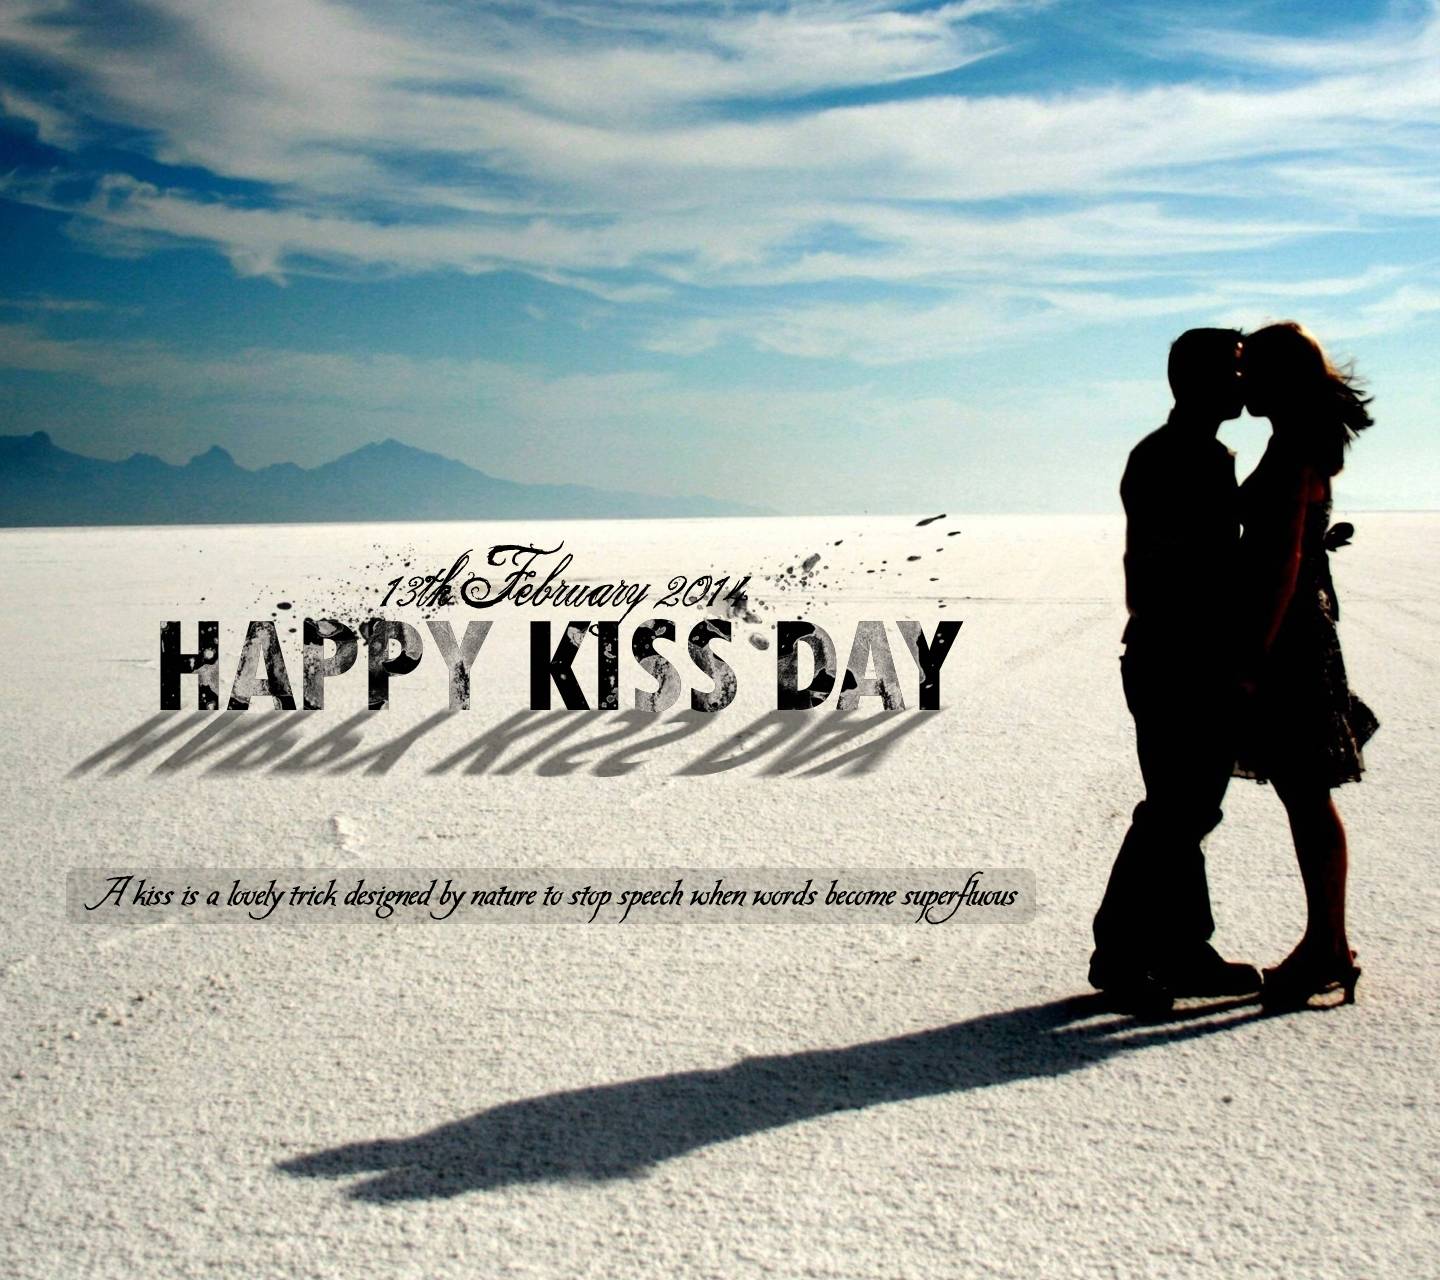 Happy Kiss Day wallpaper by .zedge.net